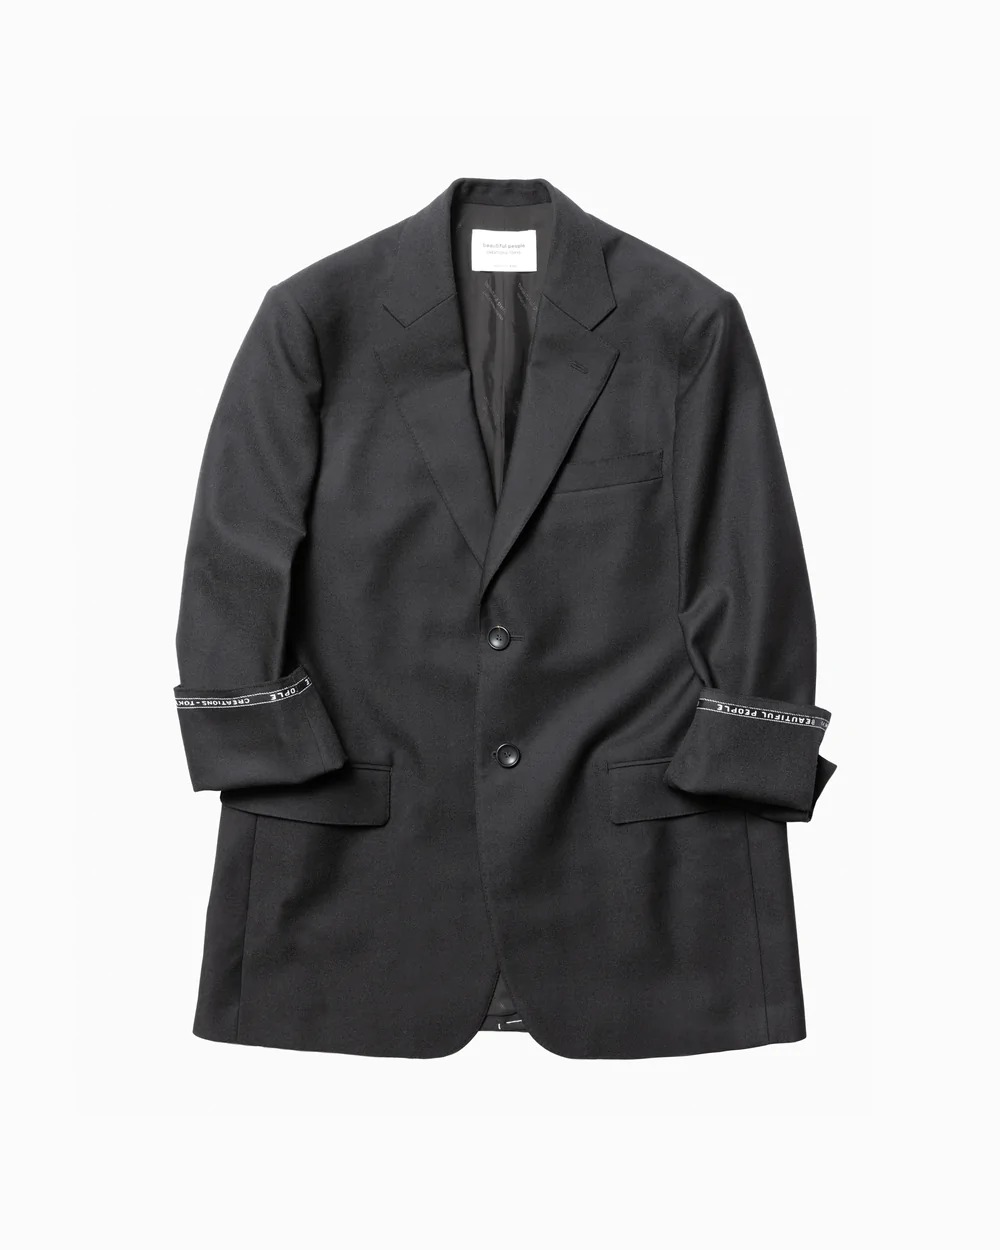 ビューティフルピープルの黒のジャケットの袖を捲くったパターン